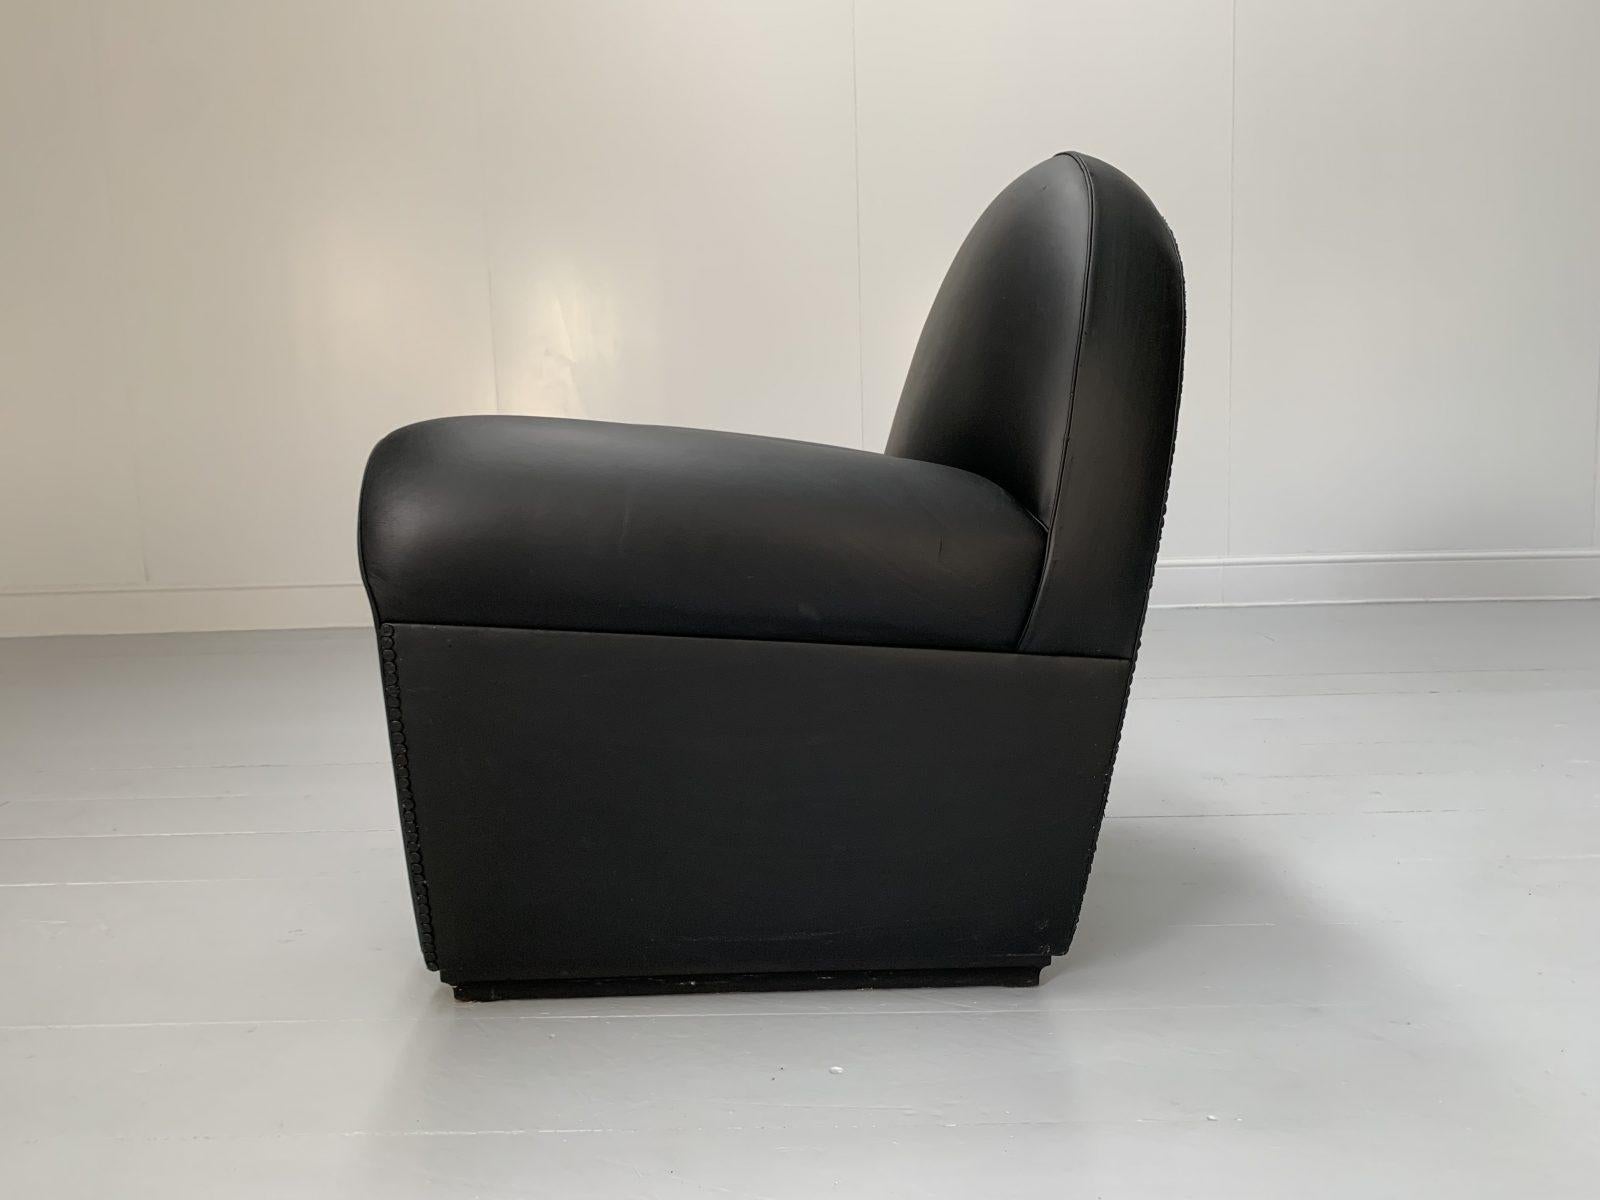 Pair of Poltrona Frau “Vanity Fair” Armchairs – In “Pelle Frau” Black Leather For Sale 6